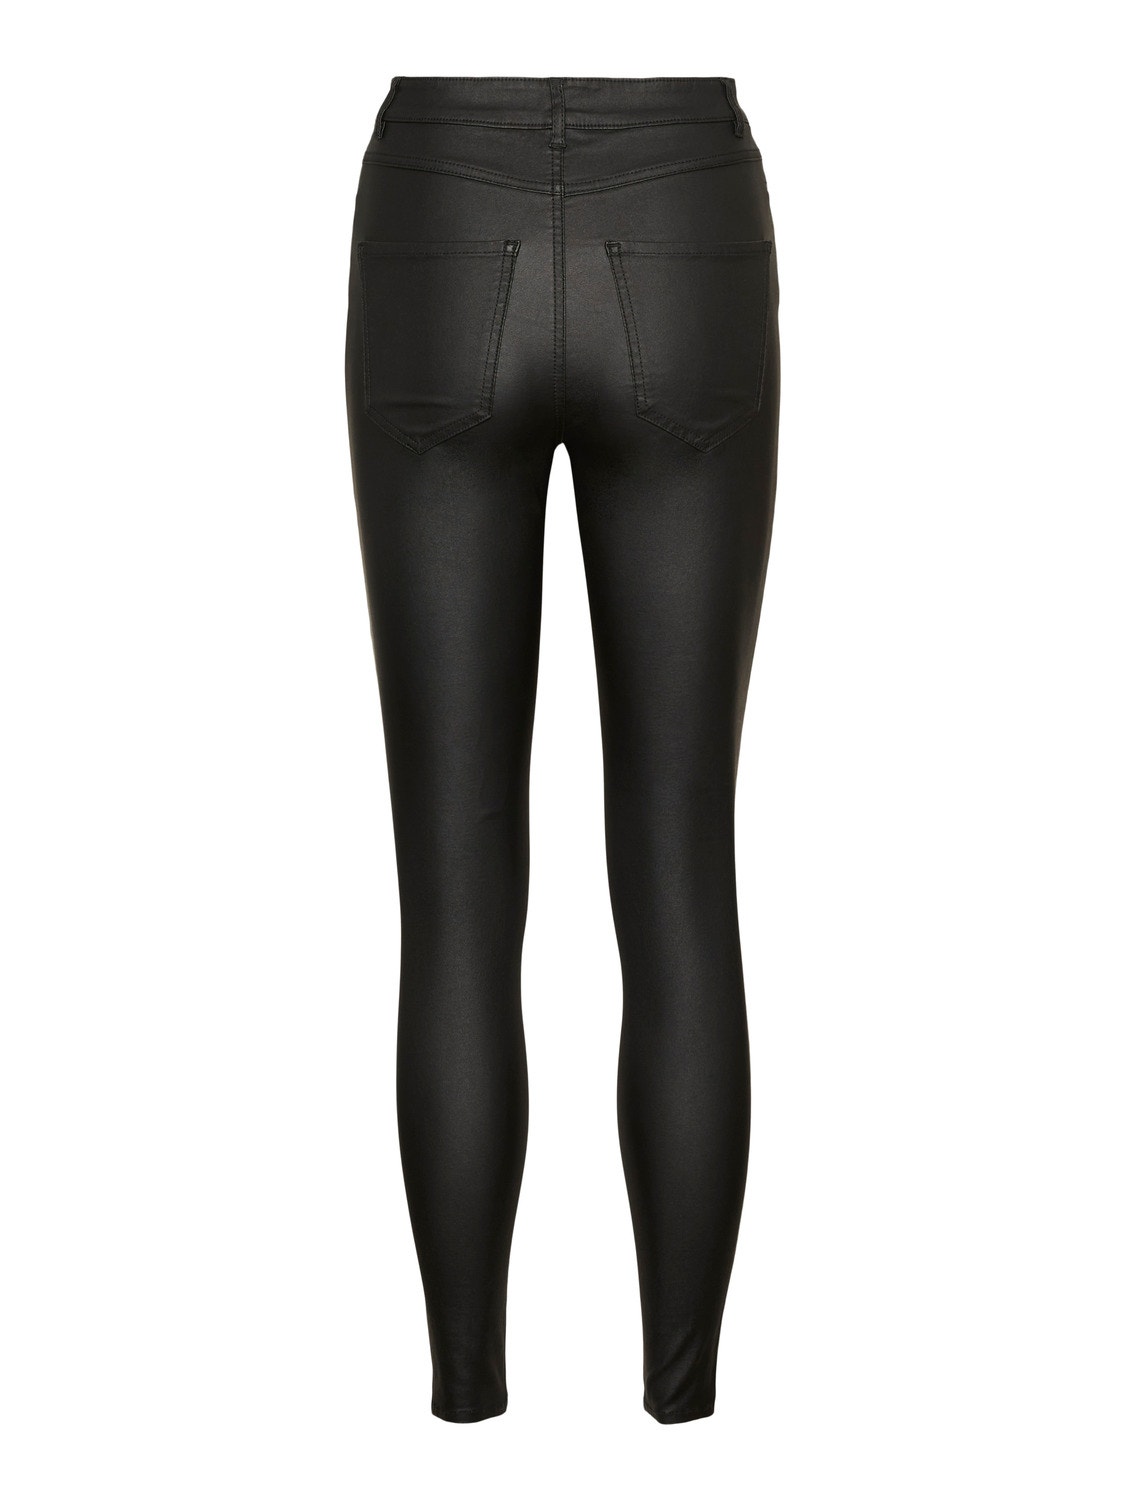 Vero Moda VMSOPHIA Trousers -Black - 10242975